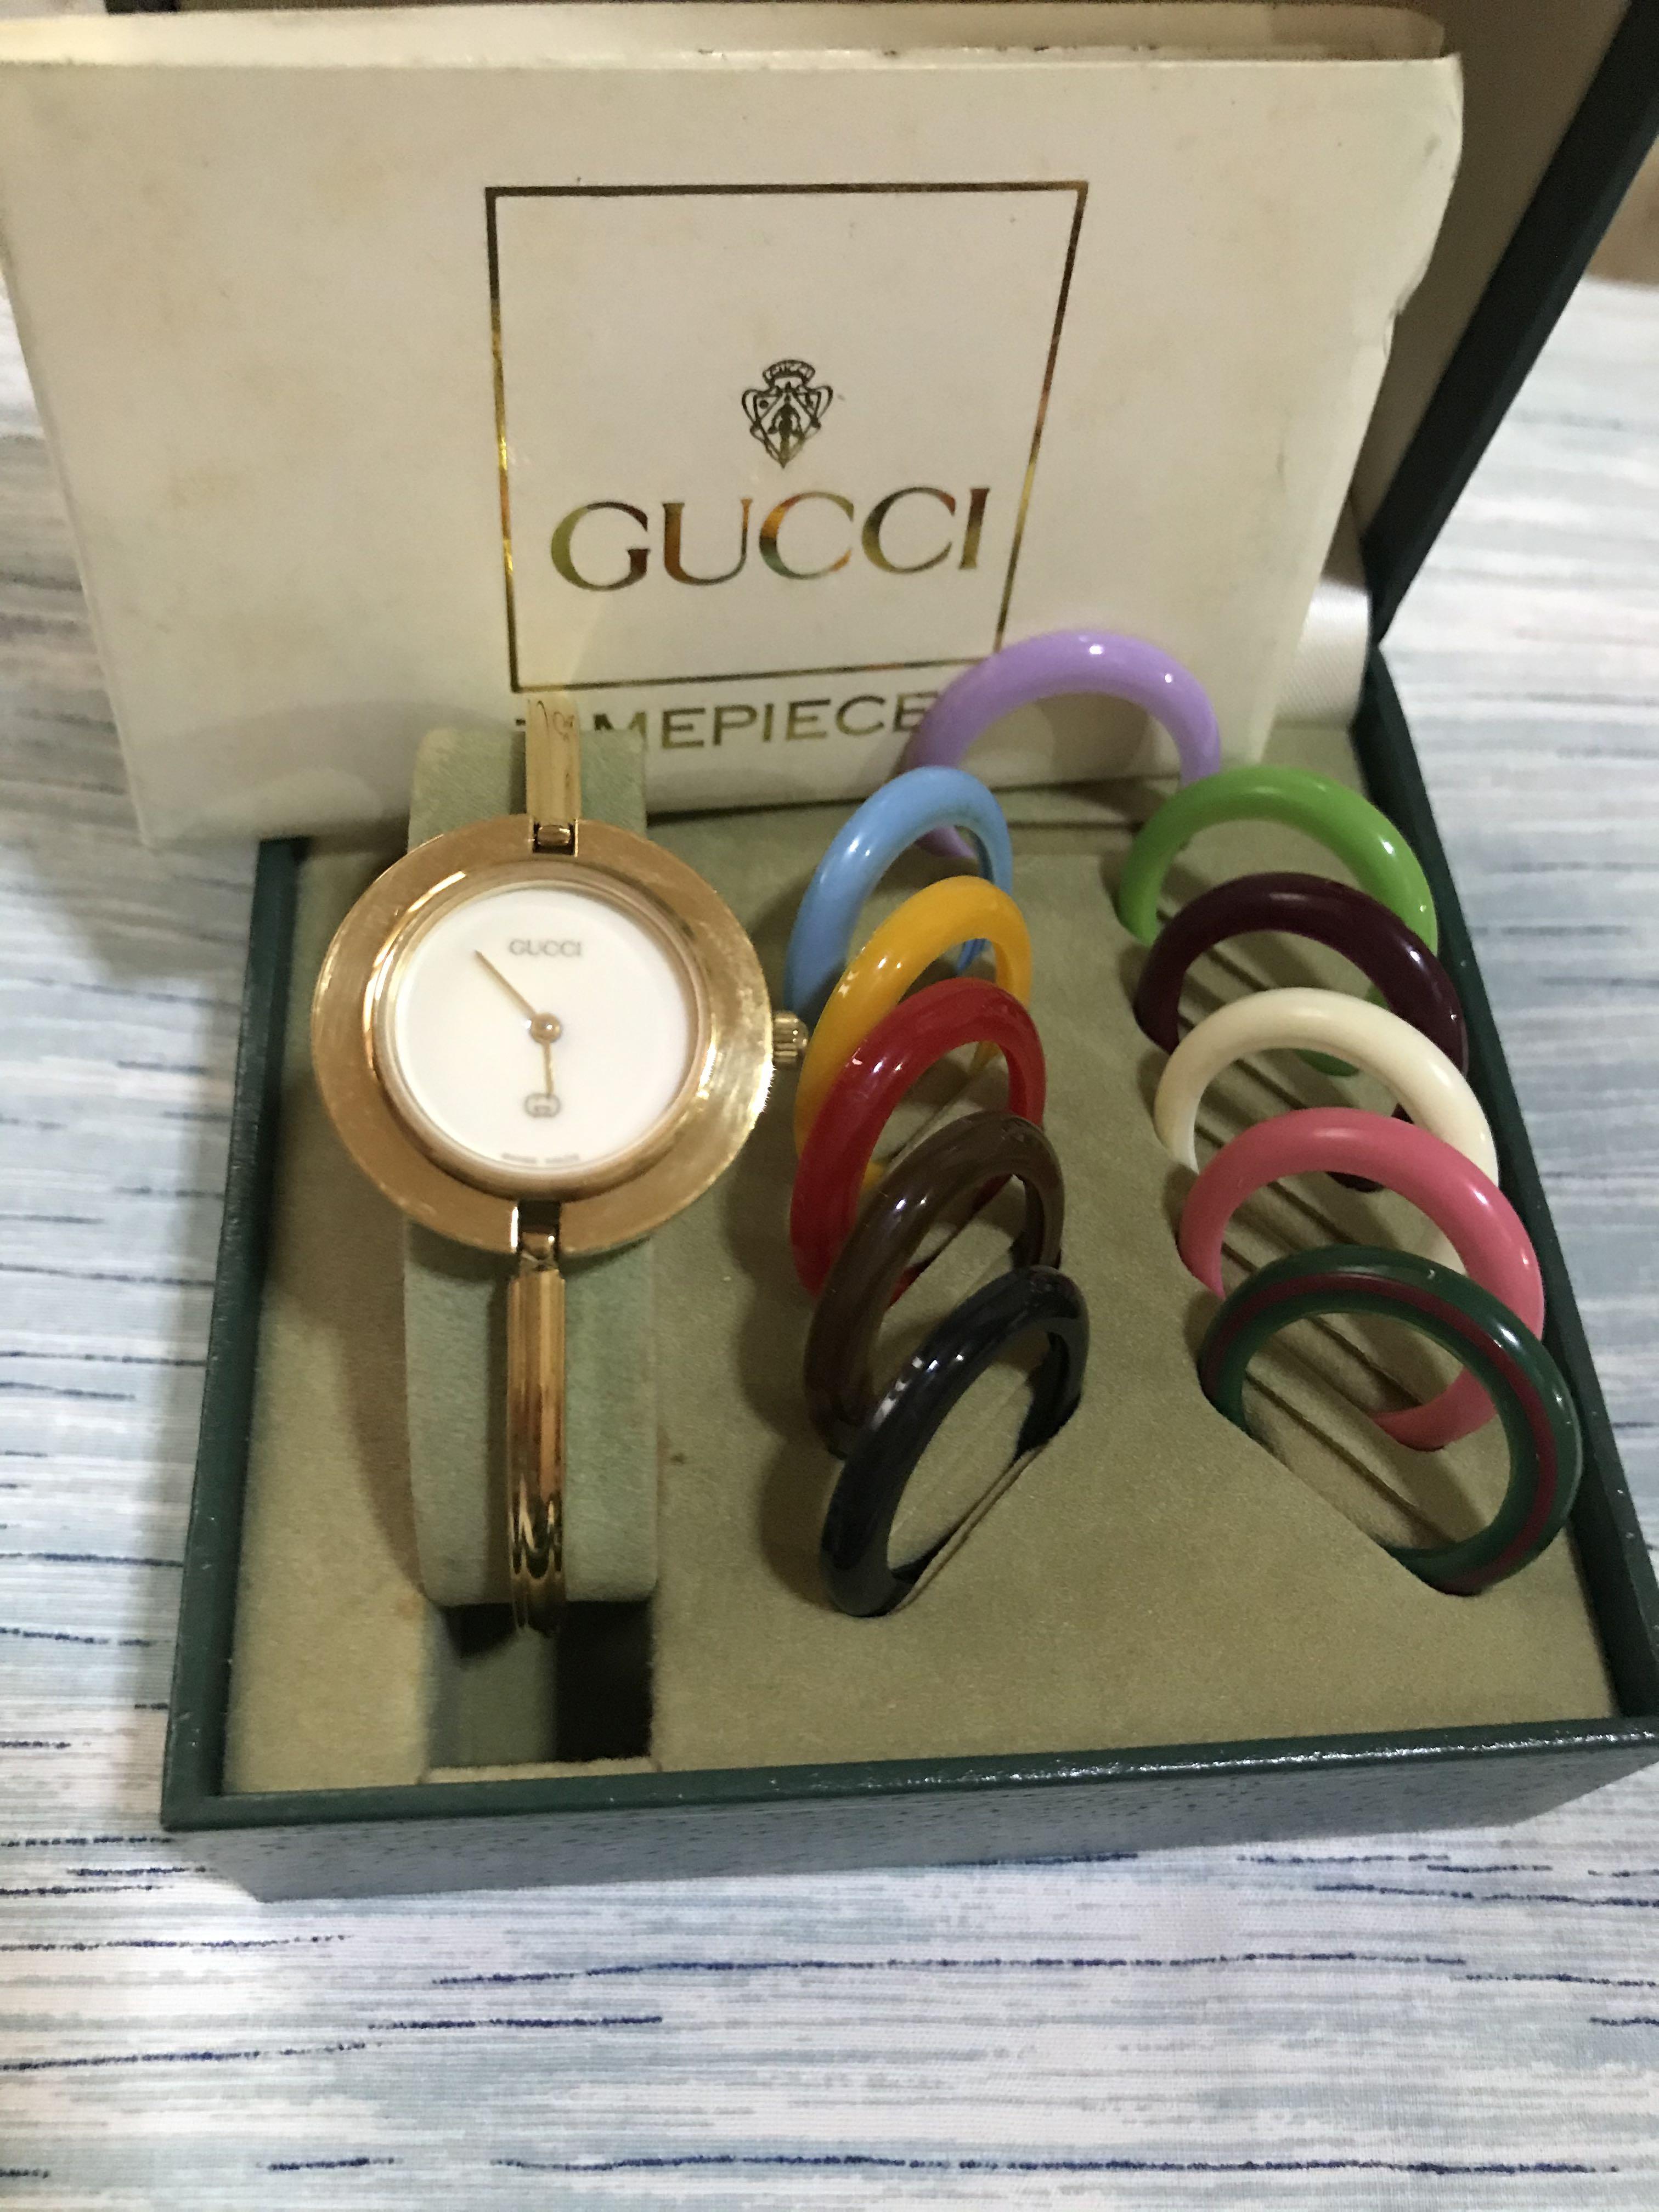 gucci clock price